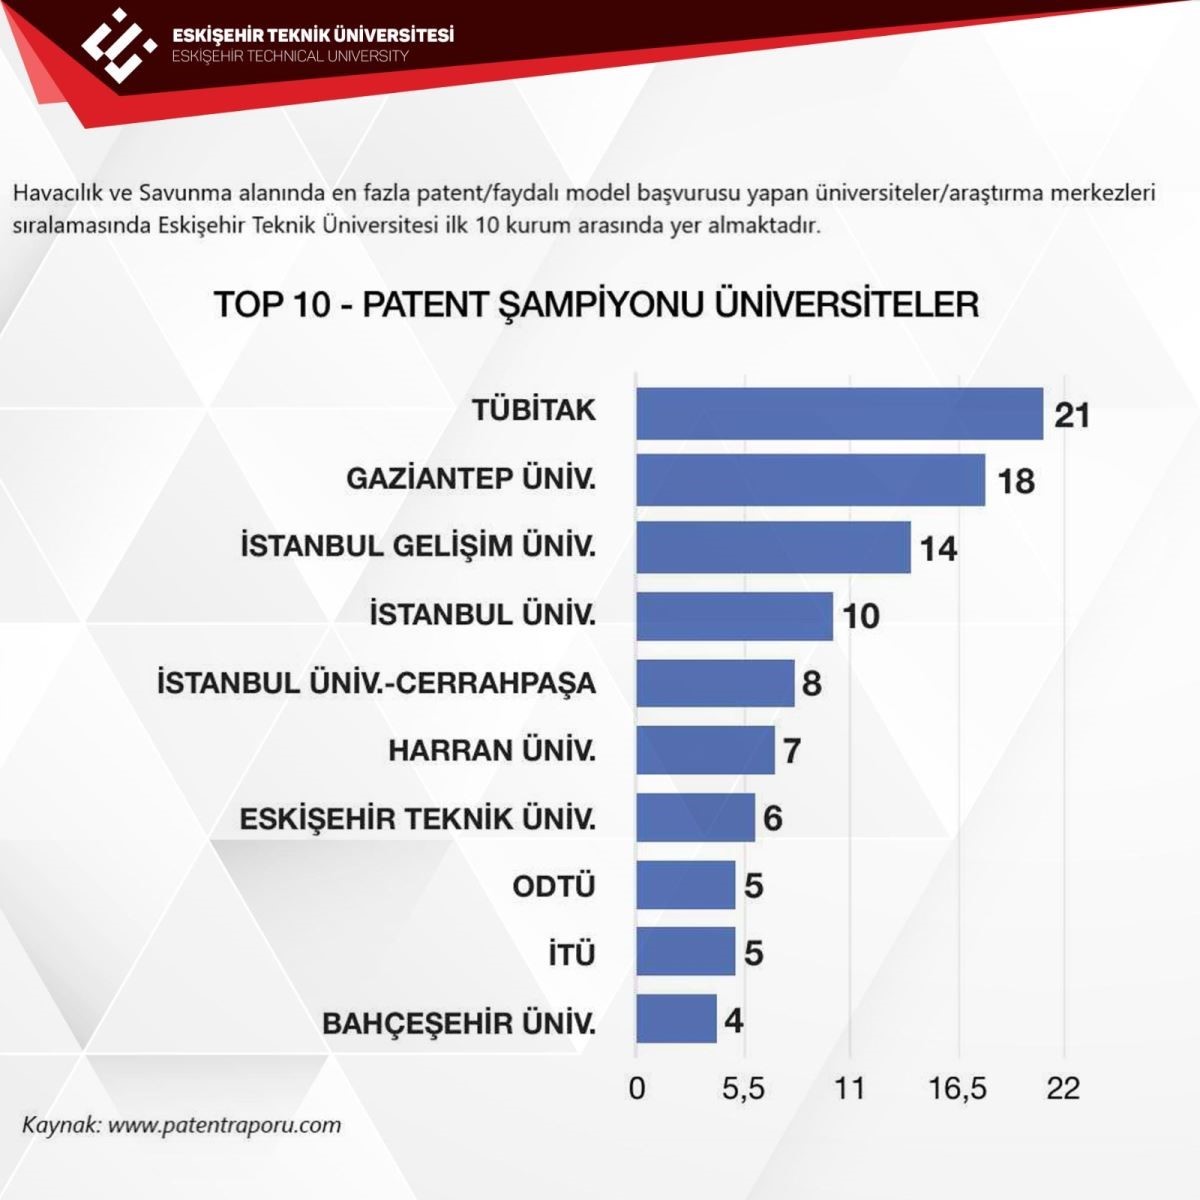 ESTÜ patent şampiyonu üniversiteler arasında en ön sıralarda yer alıyor
